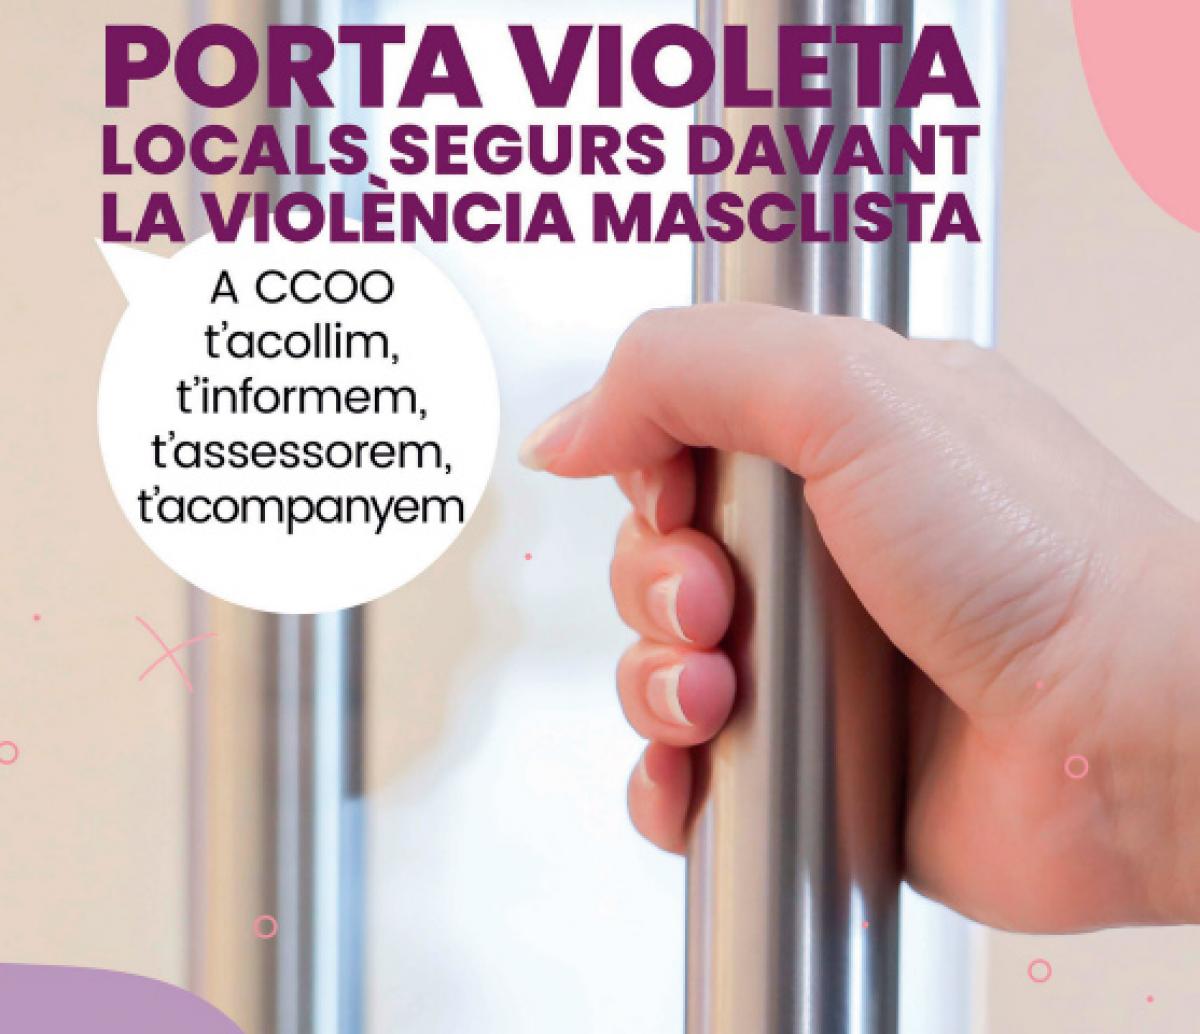 Campaa 'Porta Violeta, locals segurs davant la violncia masclista'